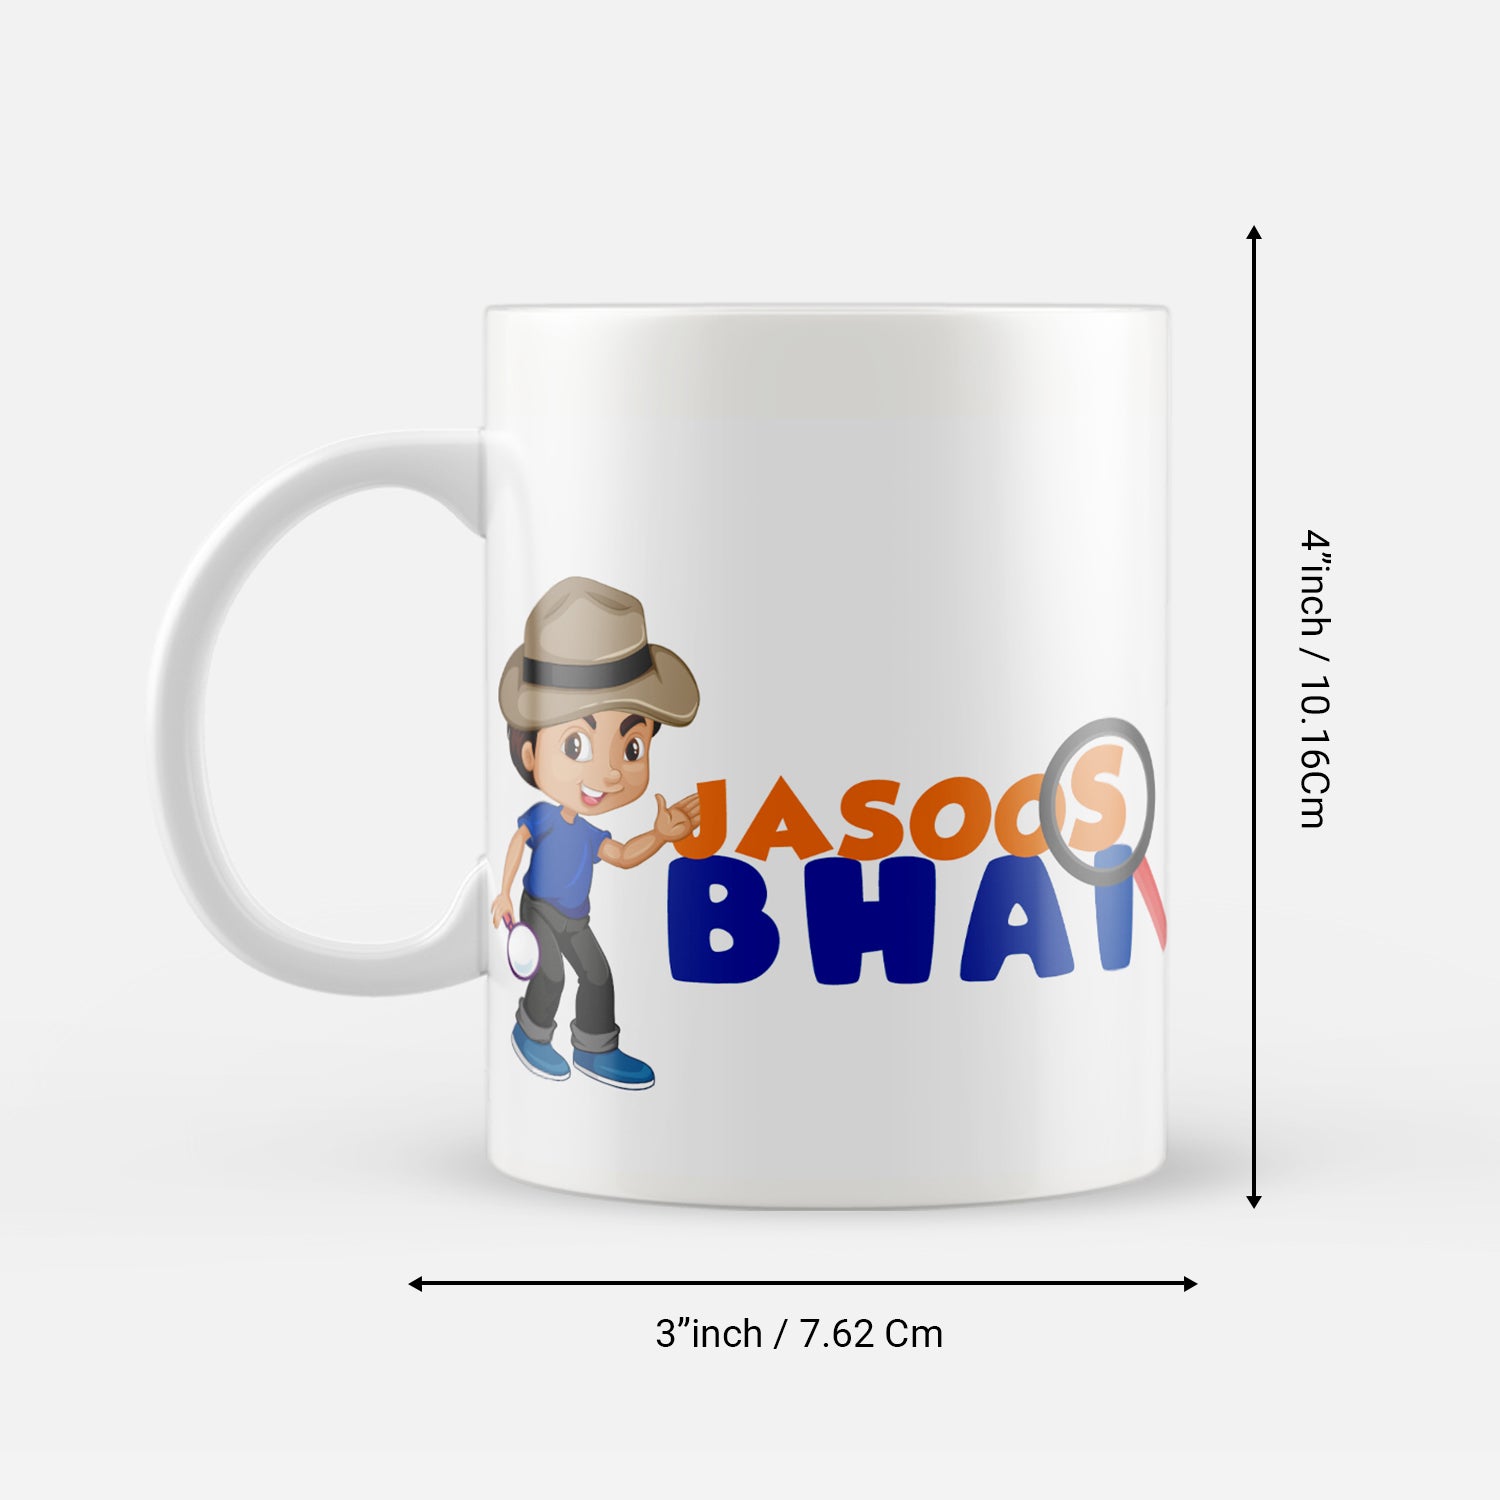 "Jasoos Bhai" Brother Gift Ceramic Coffee/Tea Mug 3